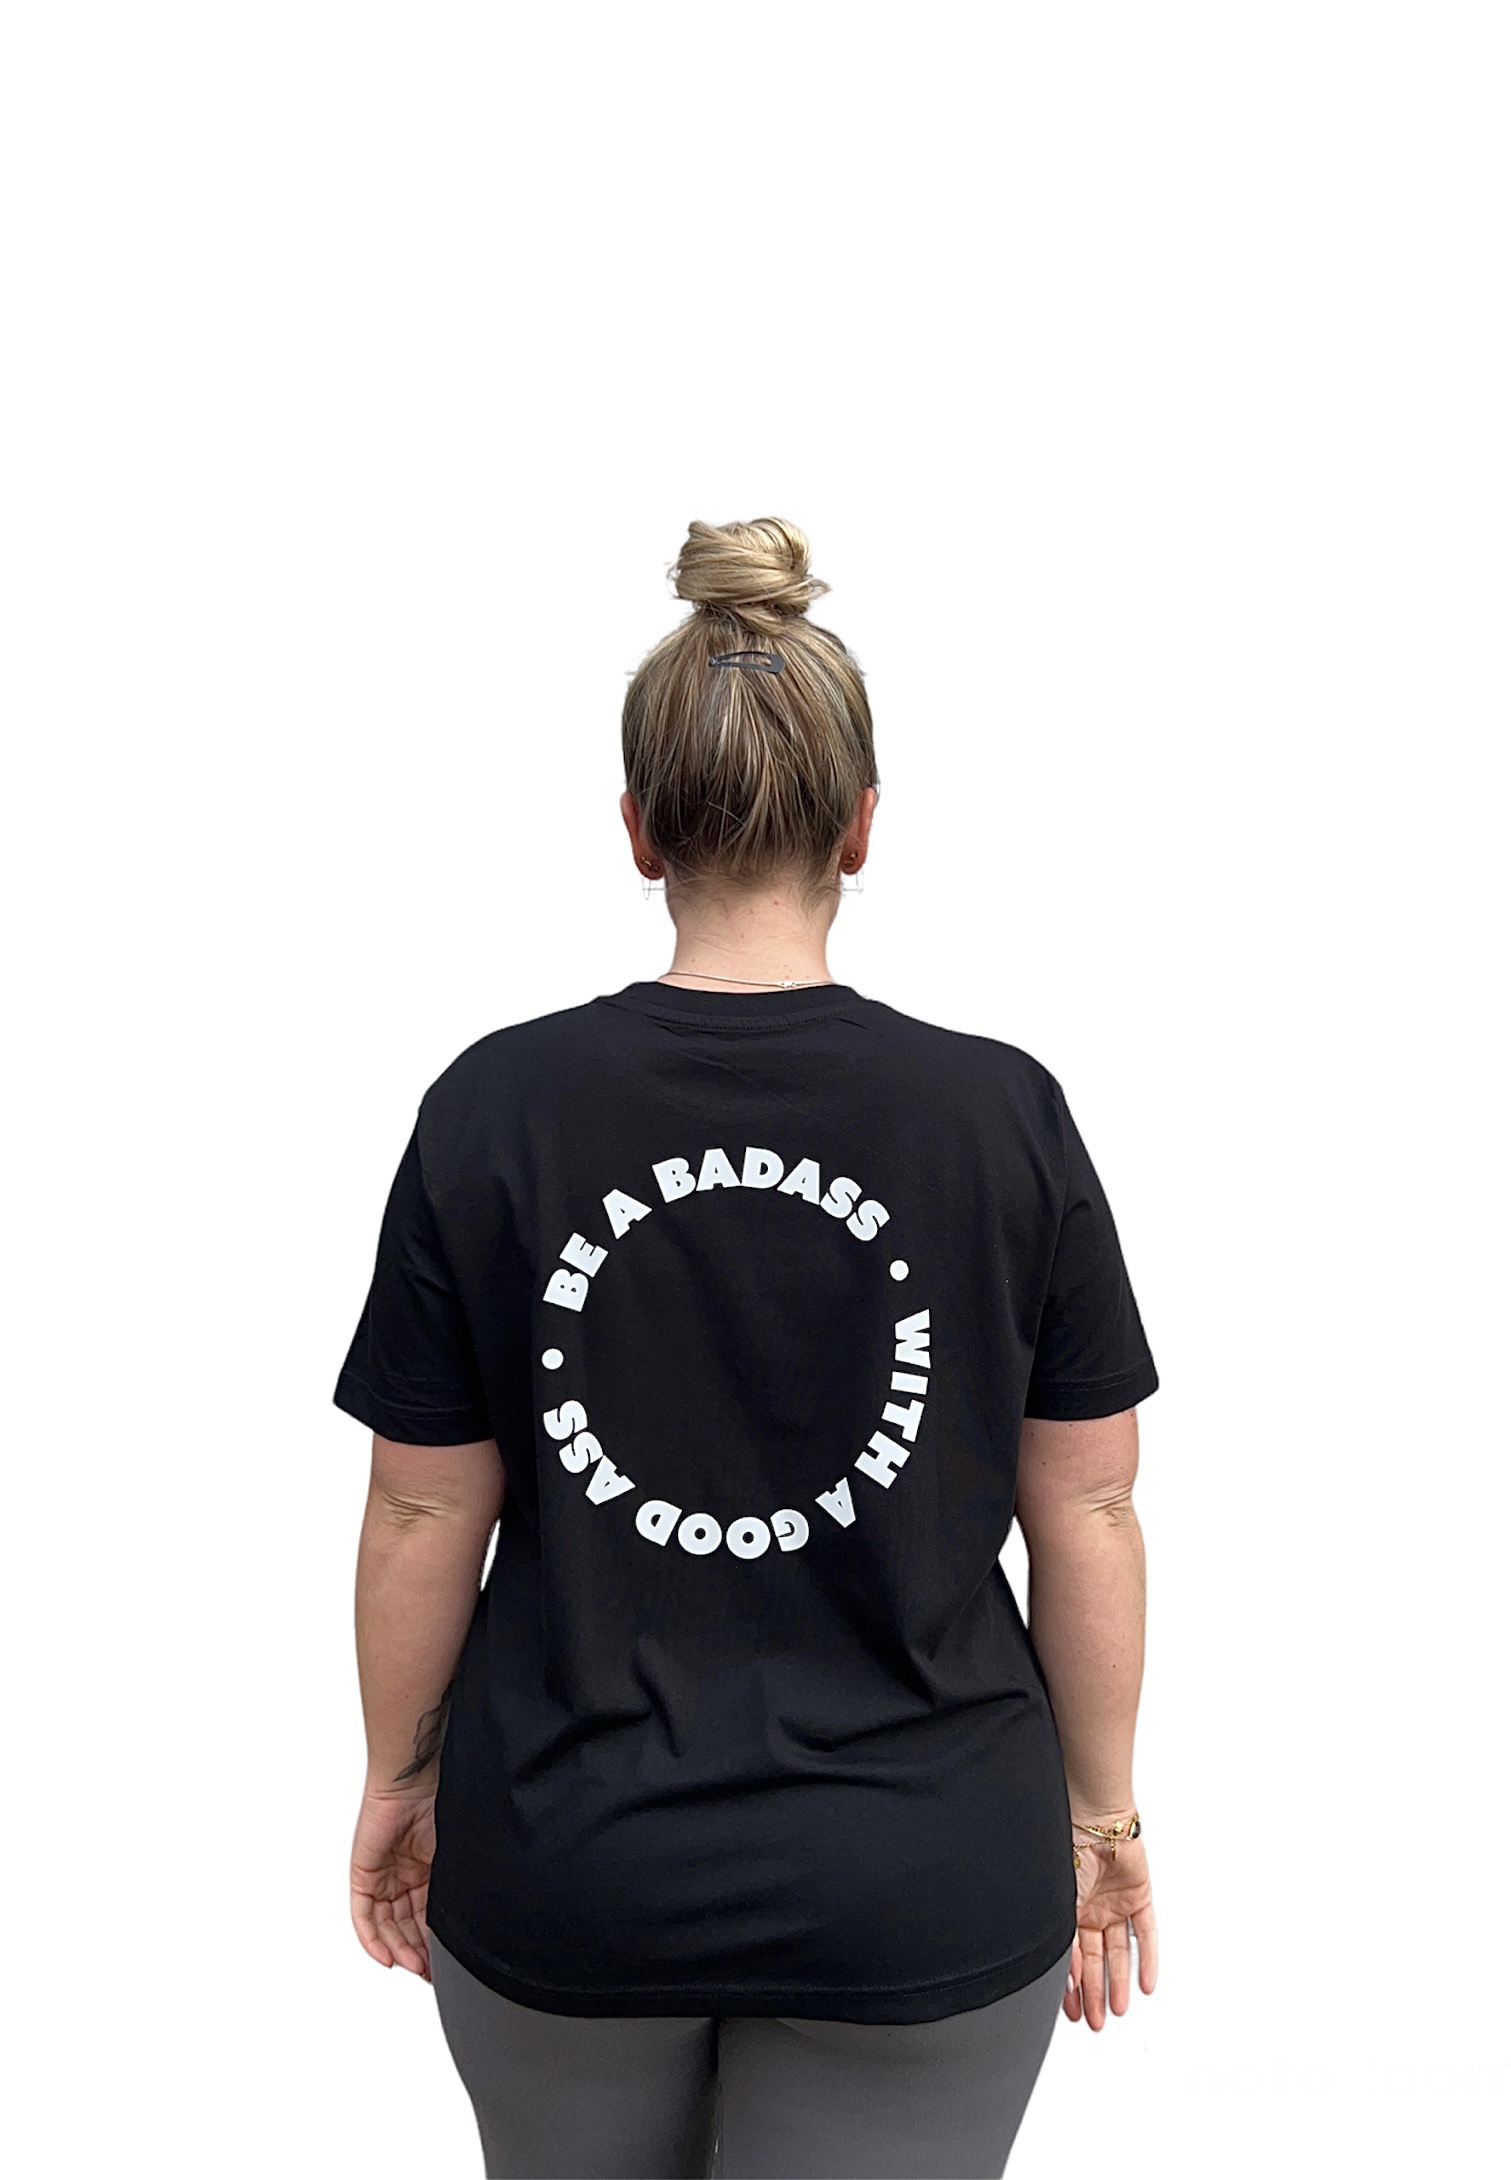 T-shirt: Be a badass with a good ass (XXXL)